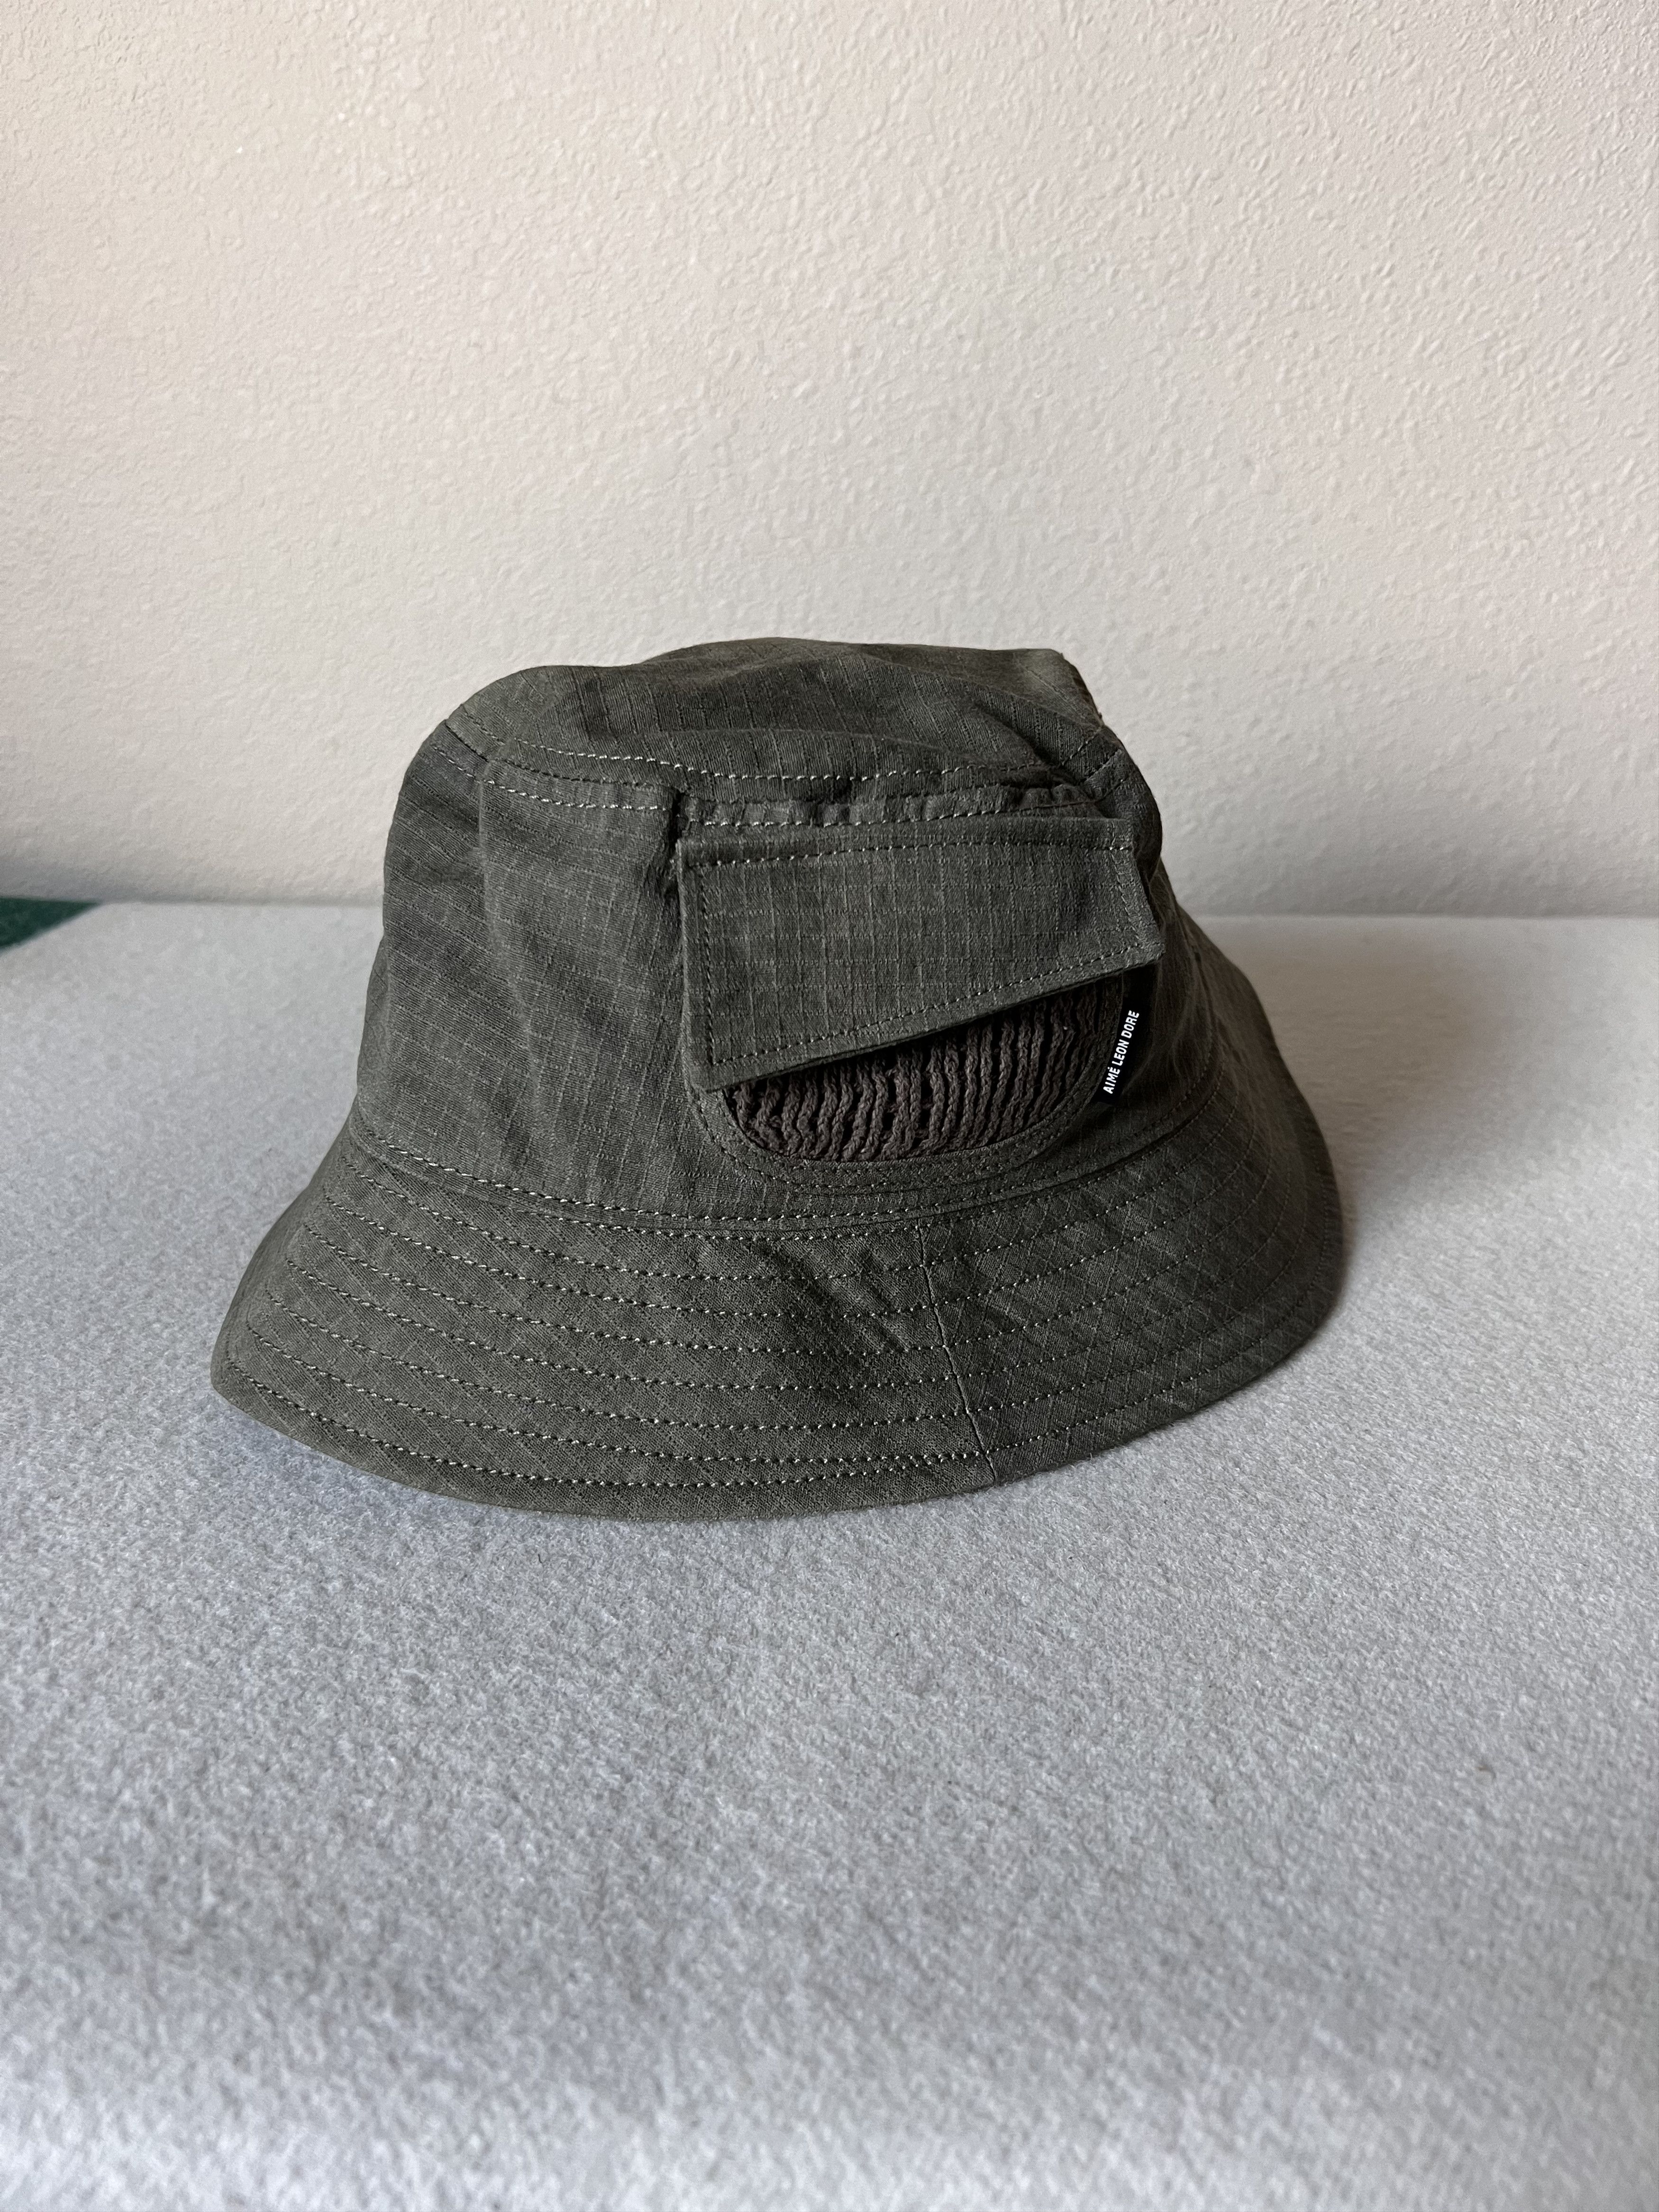 Aime Leon Dore L/XL Aime Leon Dore Jungle Bucket Hat in Olive | Grailed